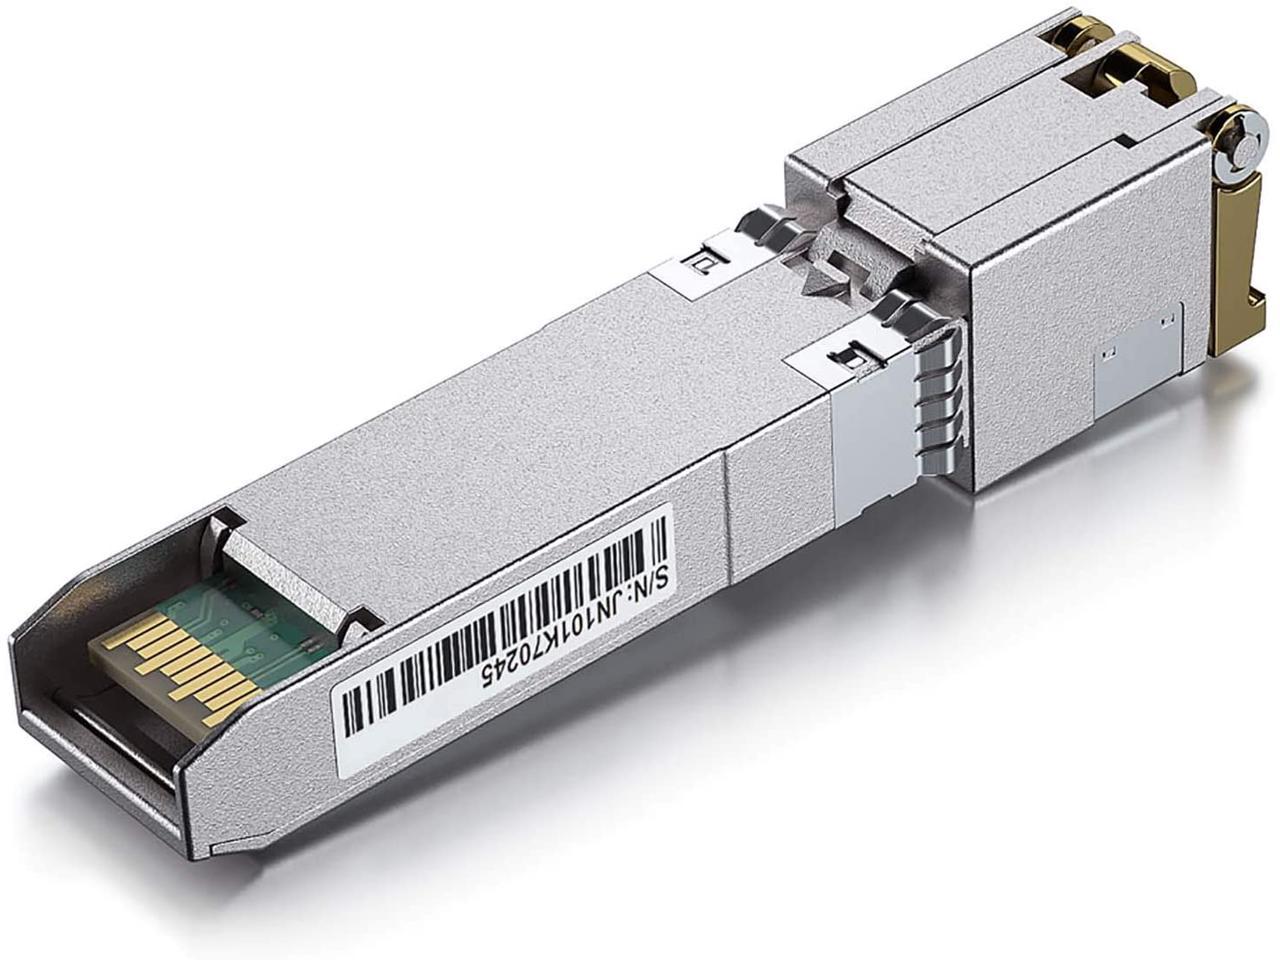 1000Base-T SFP Transceiver Module Longline for Cisco Compatible GLC-T/SFP-GE-T Gigabit RJ45 Copper